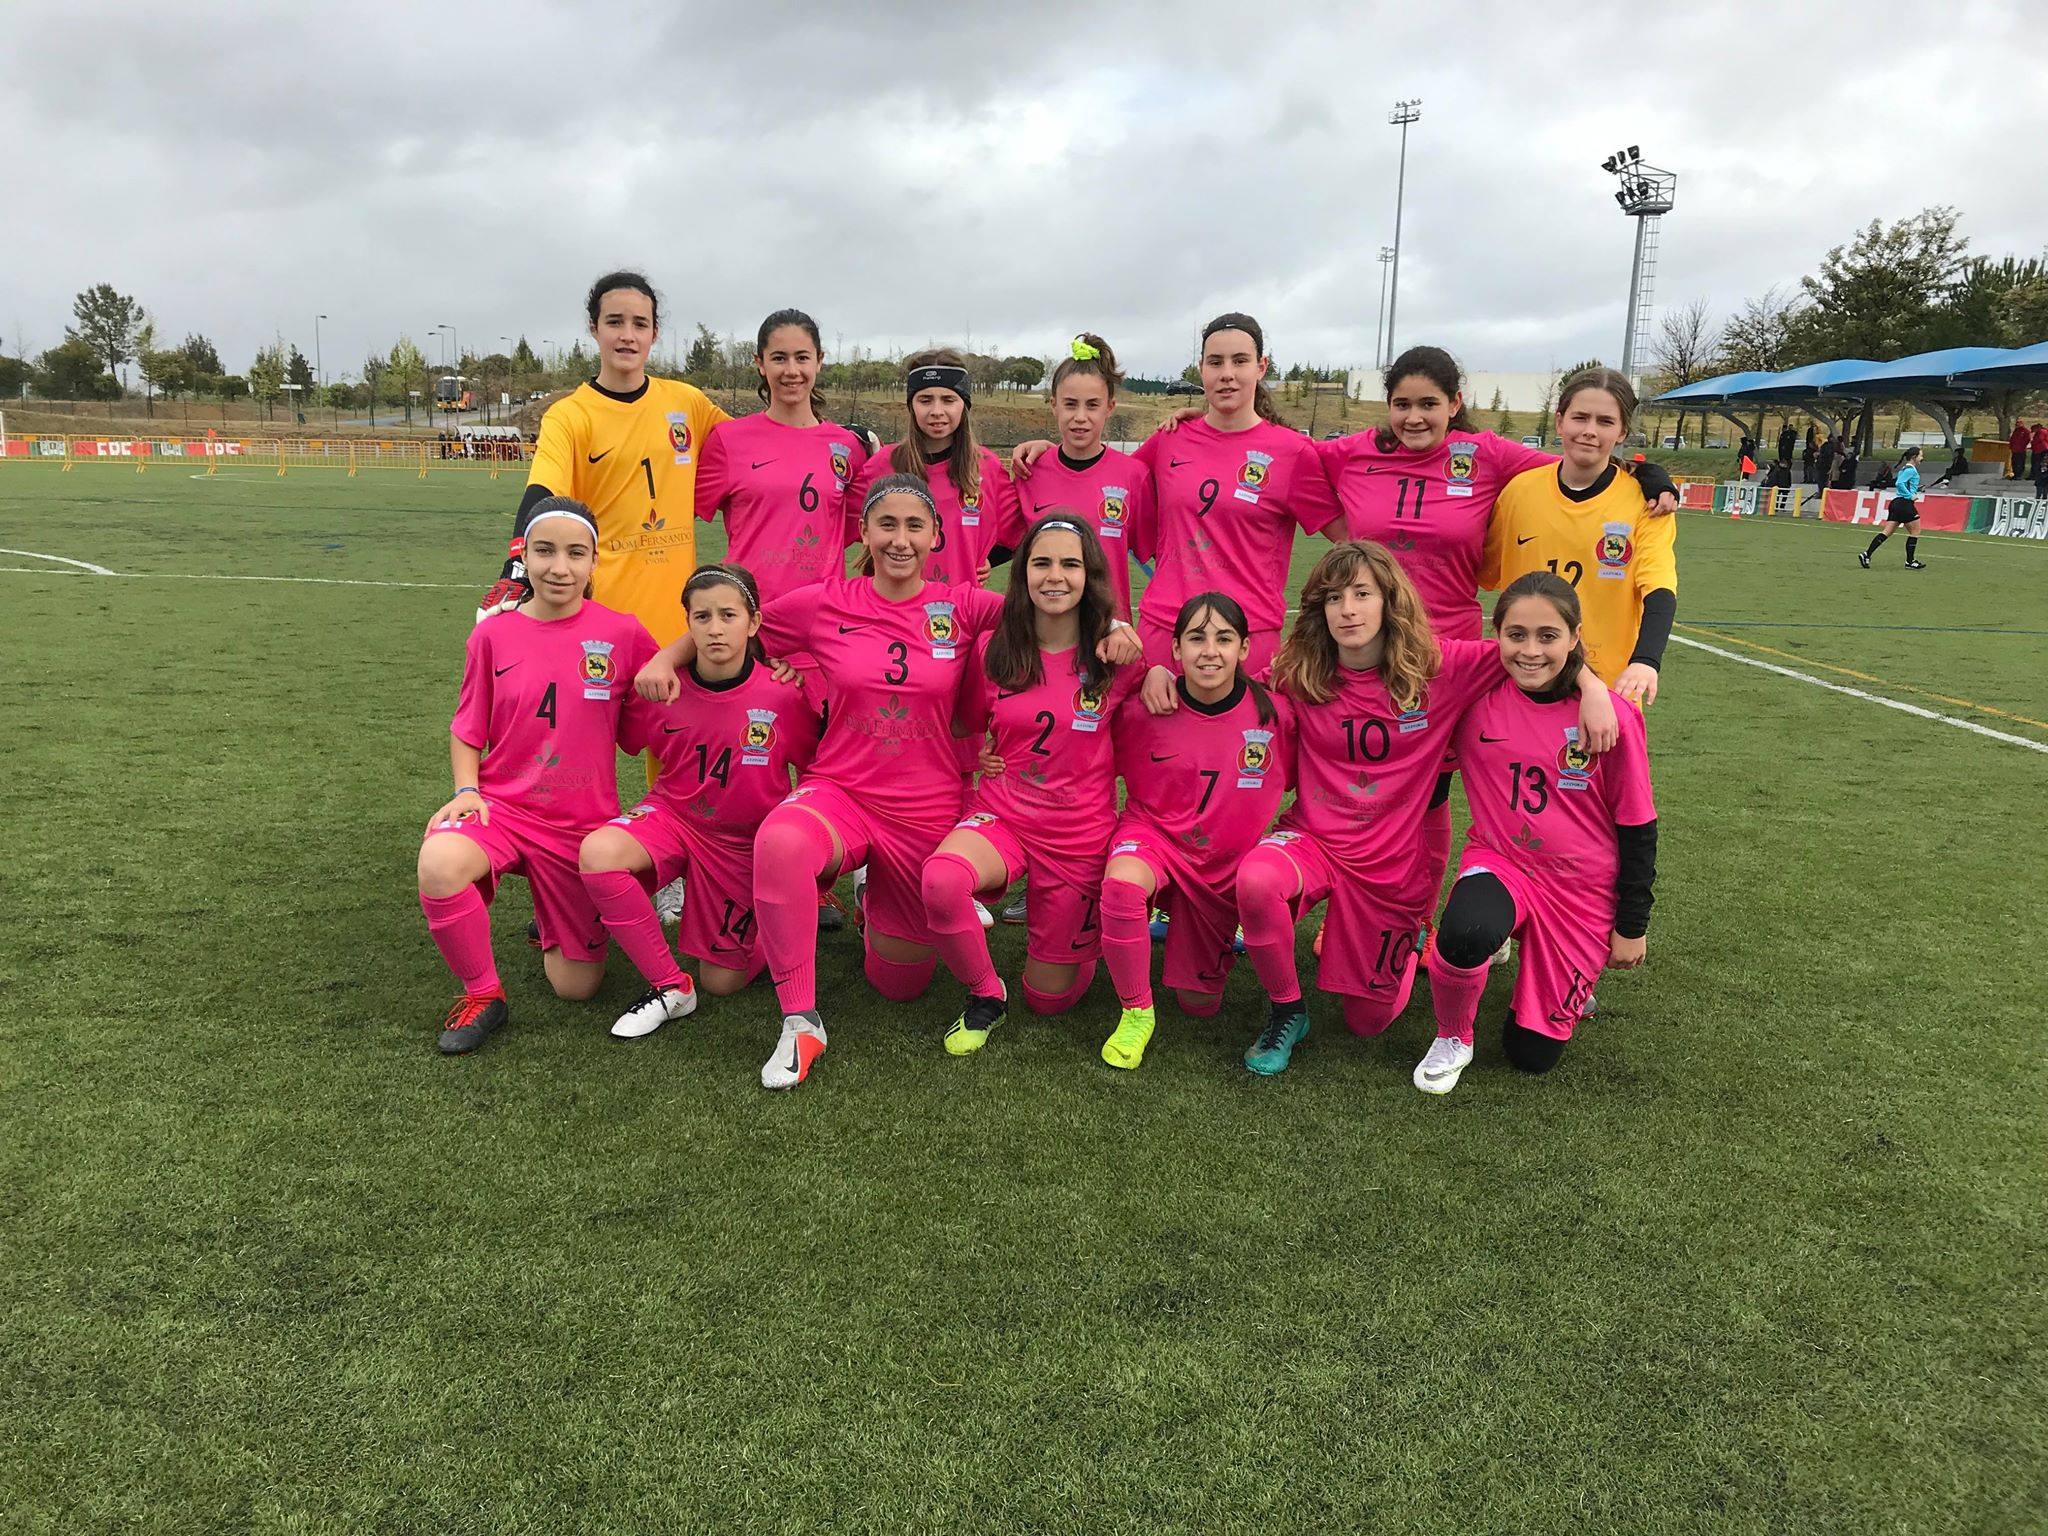 No Interassociações Sub-14 Futebol 7 Feminino (AF ÉVORA 3 AF VISEU 1)